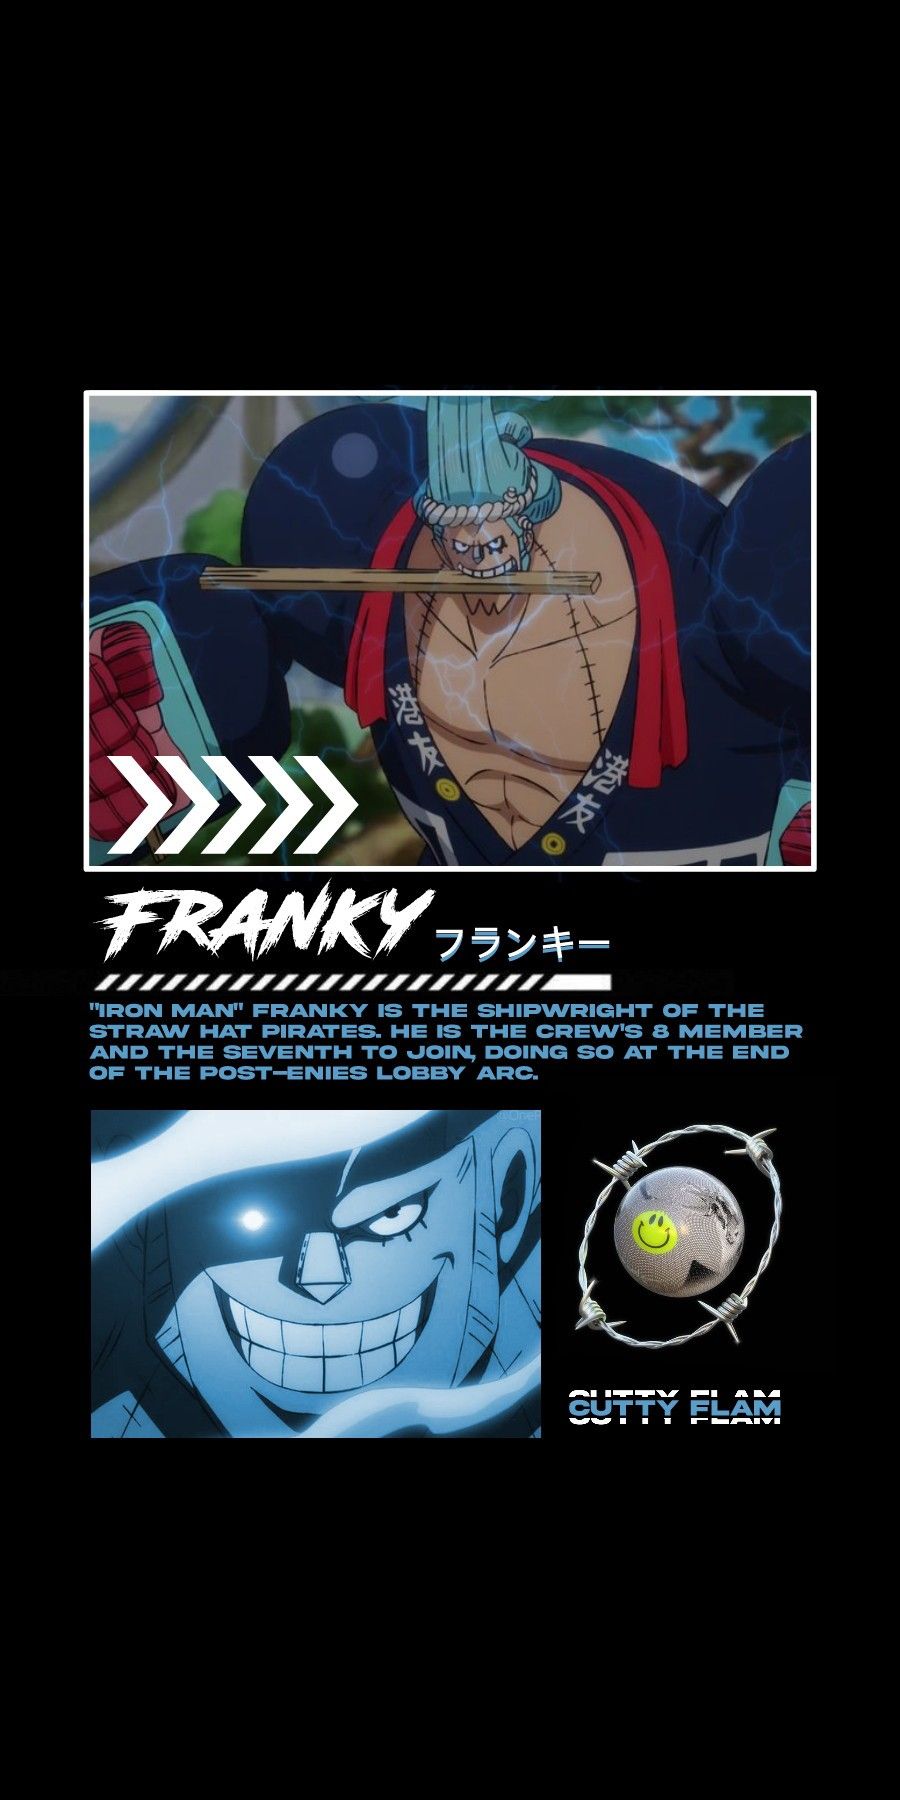 Imagefranky anime wallpaper 37 HD à telecharger gratuitement sur fond-ecran-anime.fr en HD 1800 x 900